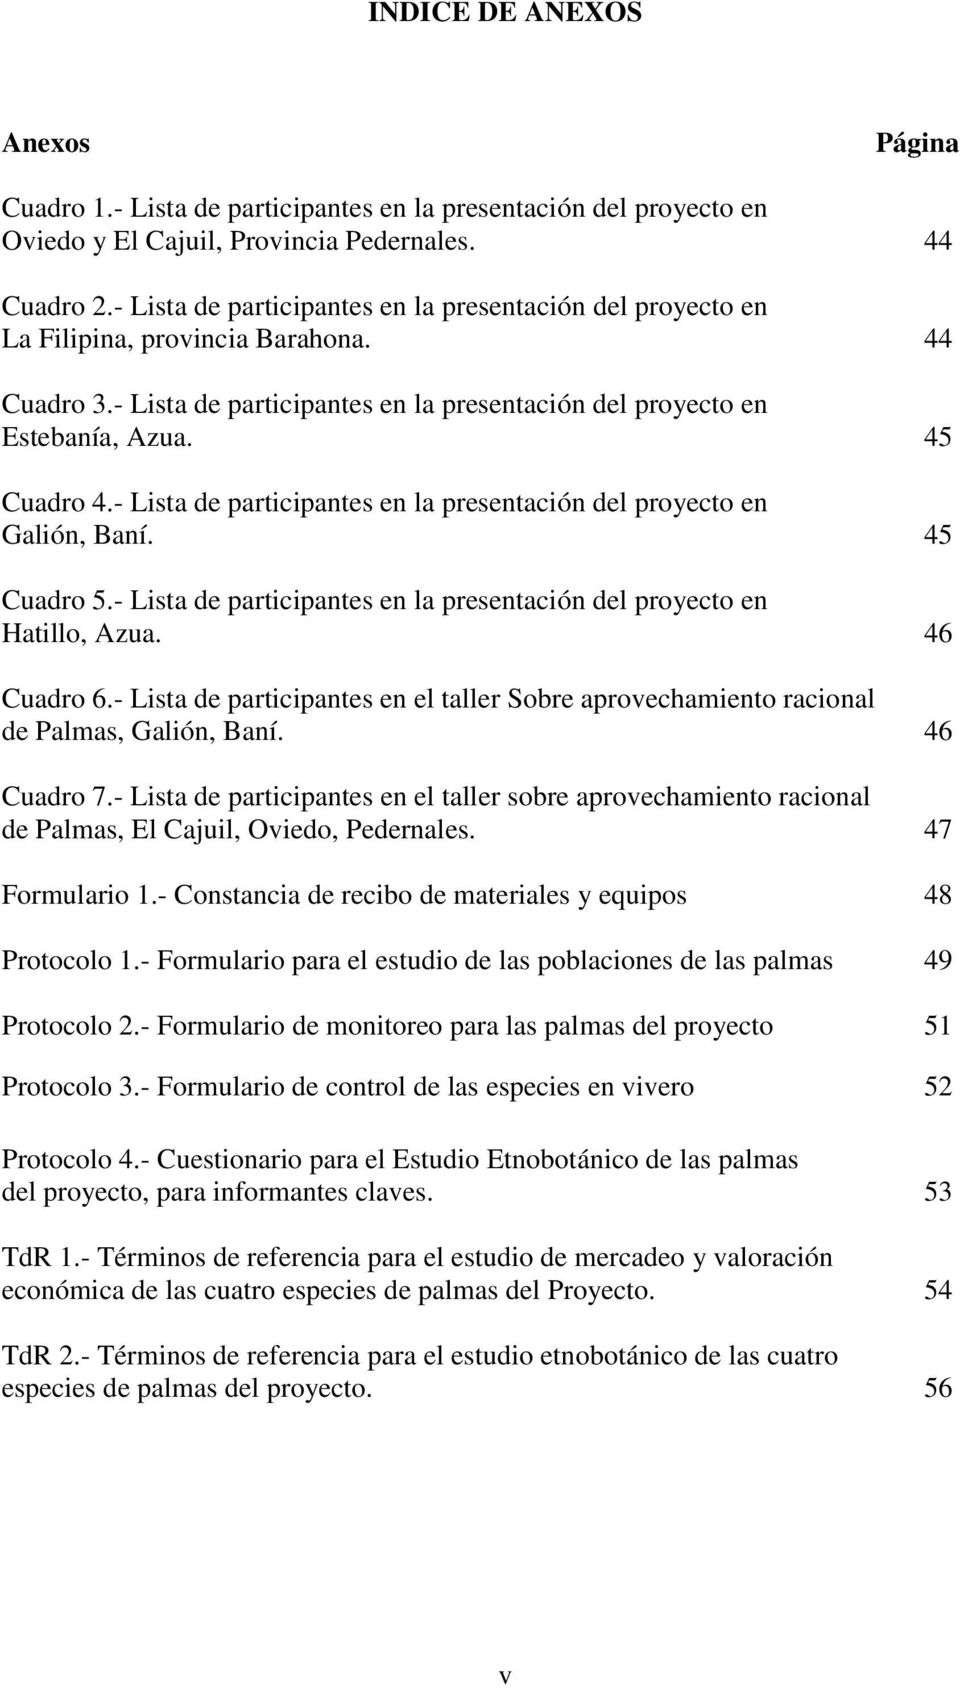 - Lista de participantes en la presentación del proyecto en Galión, Baní. 45 Cuadro 5.- Lista de participantes en la presentación del proyecto en Hatillo, Azua. 46 Cuadro 6.